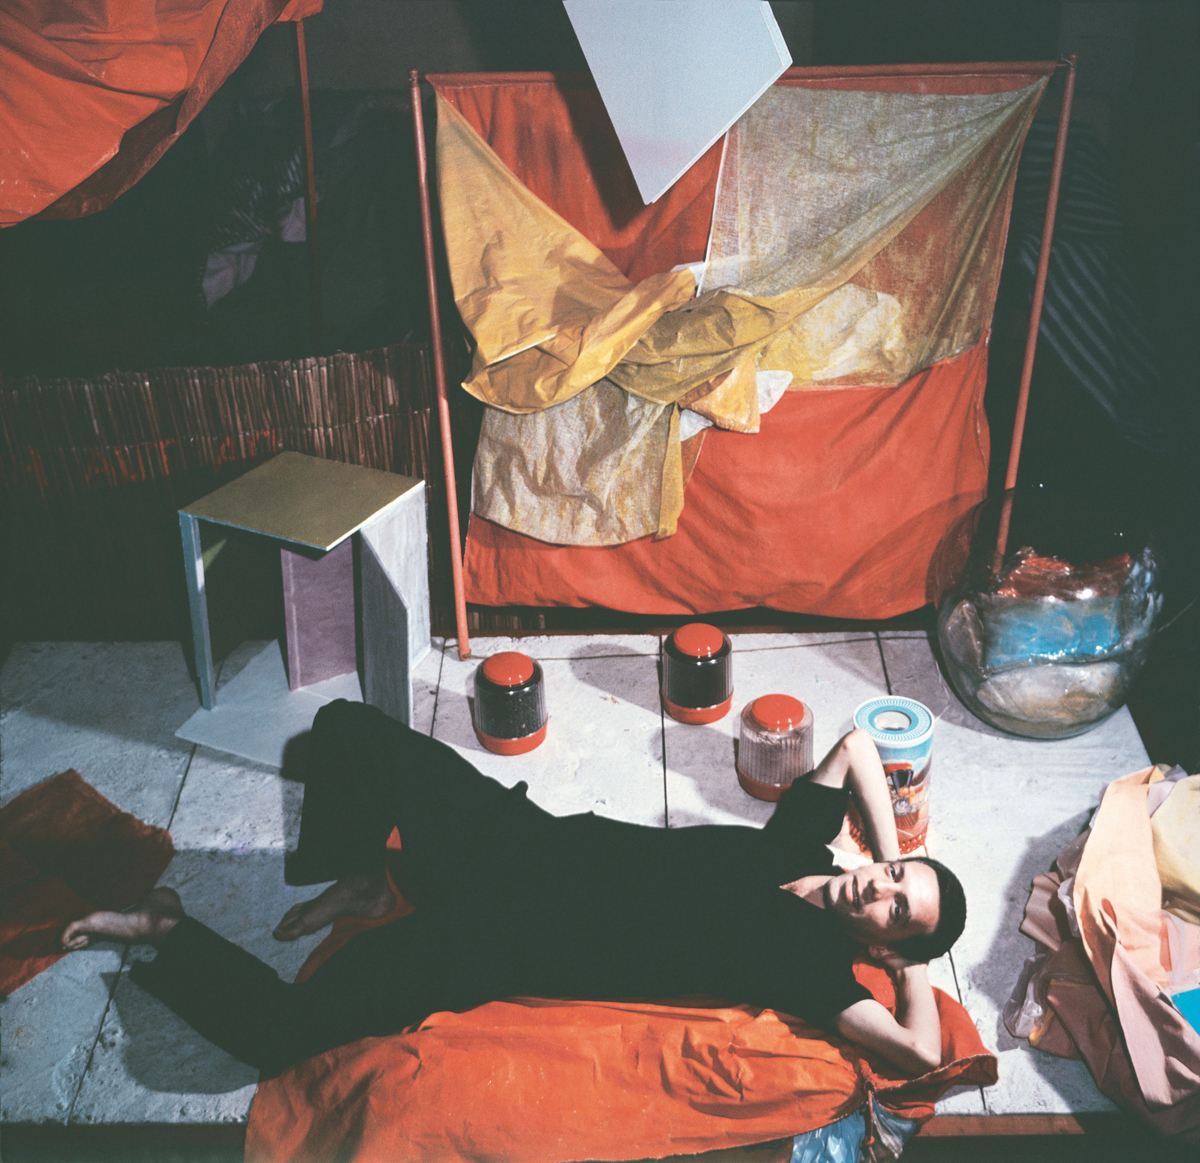 Hélio Oiticica avec Bólides et Parangolés dans son atelier rue Engenheiro Alfredo Duarte, Rio de Janeiro, ca. 1965. Photo : © Projeto Hélio Oiticica